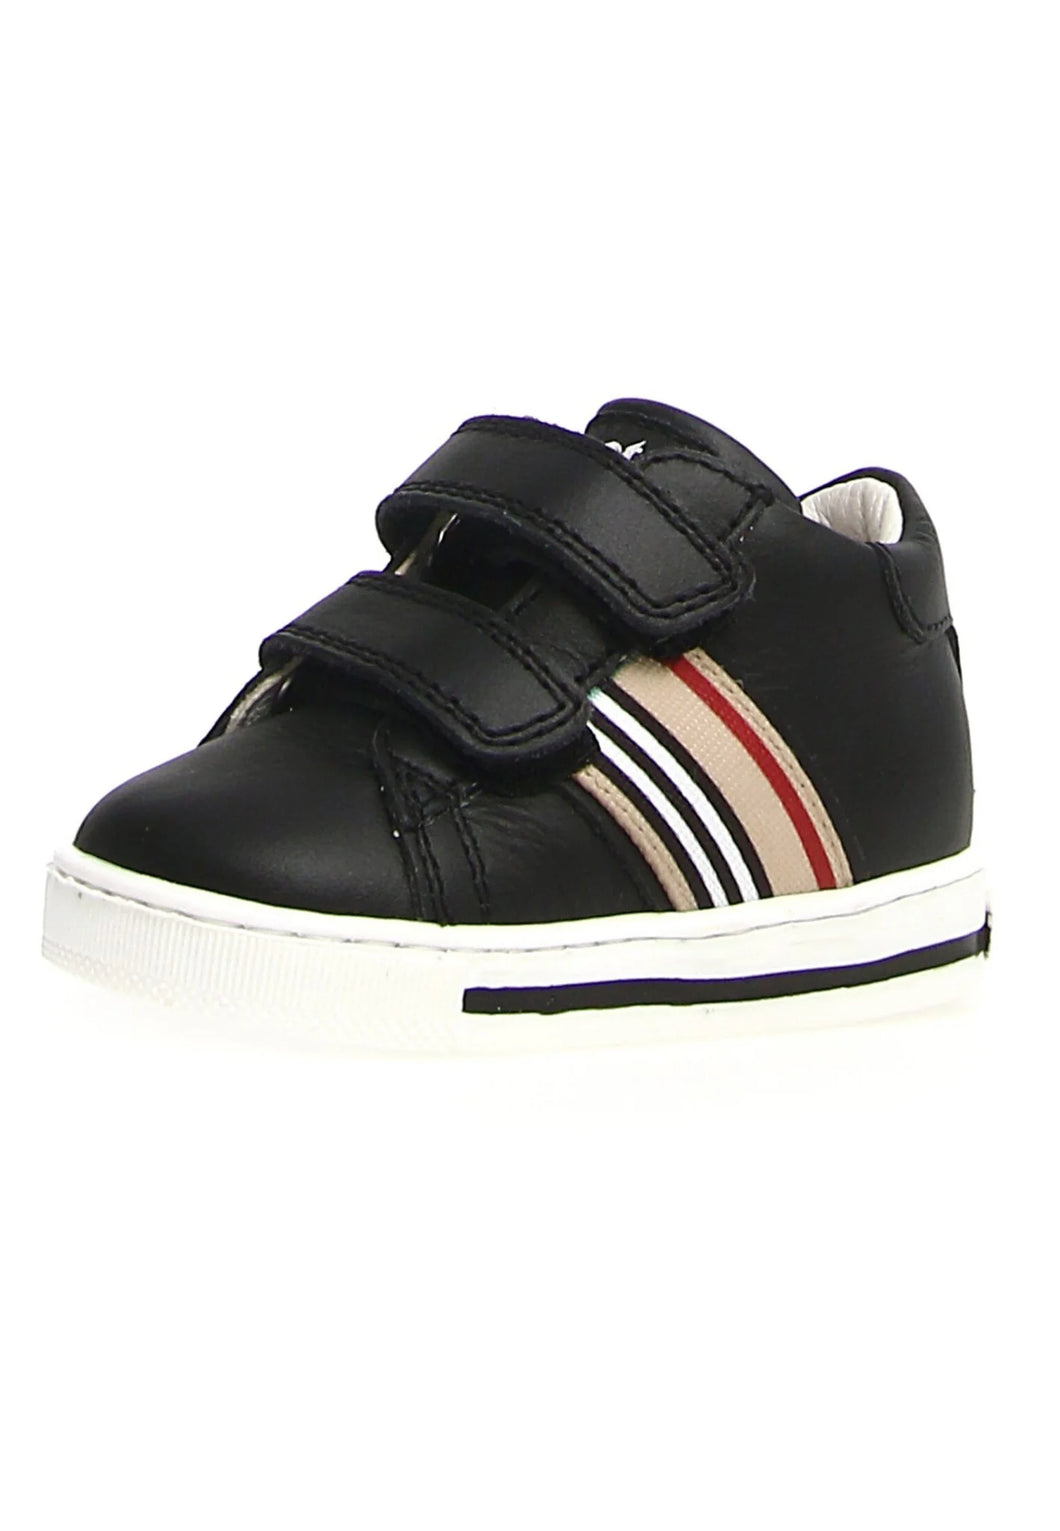 SALE Falcotto New Leryn VL Burberry Velcro Baby Sneaker